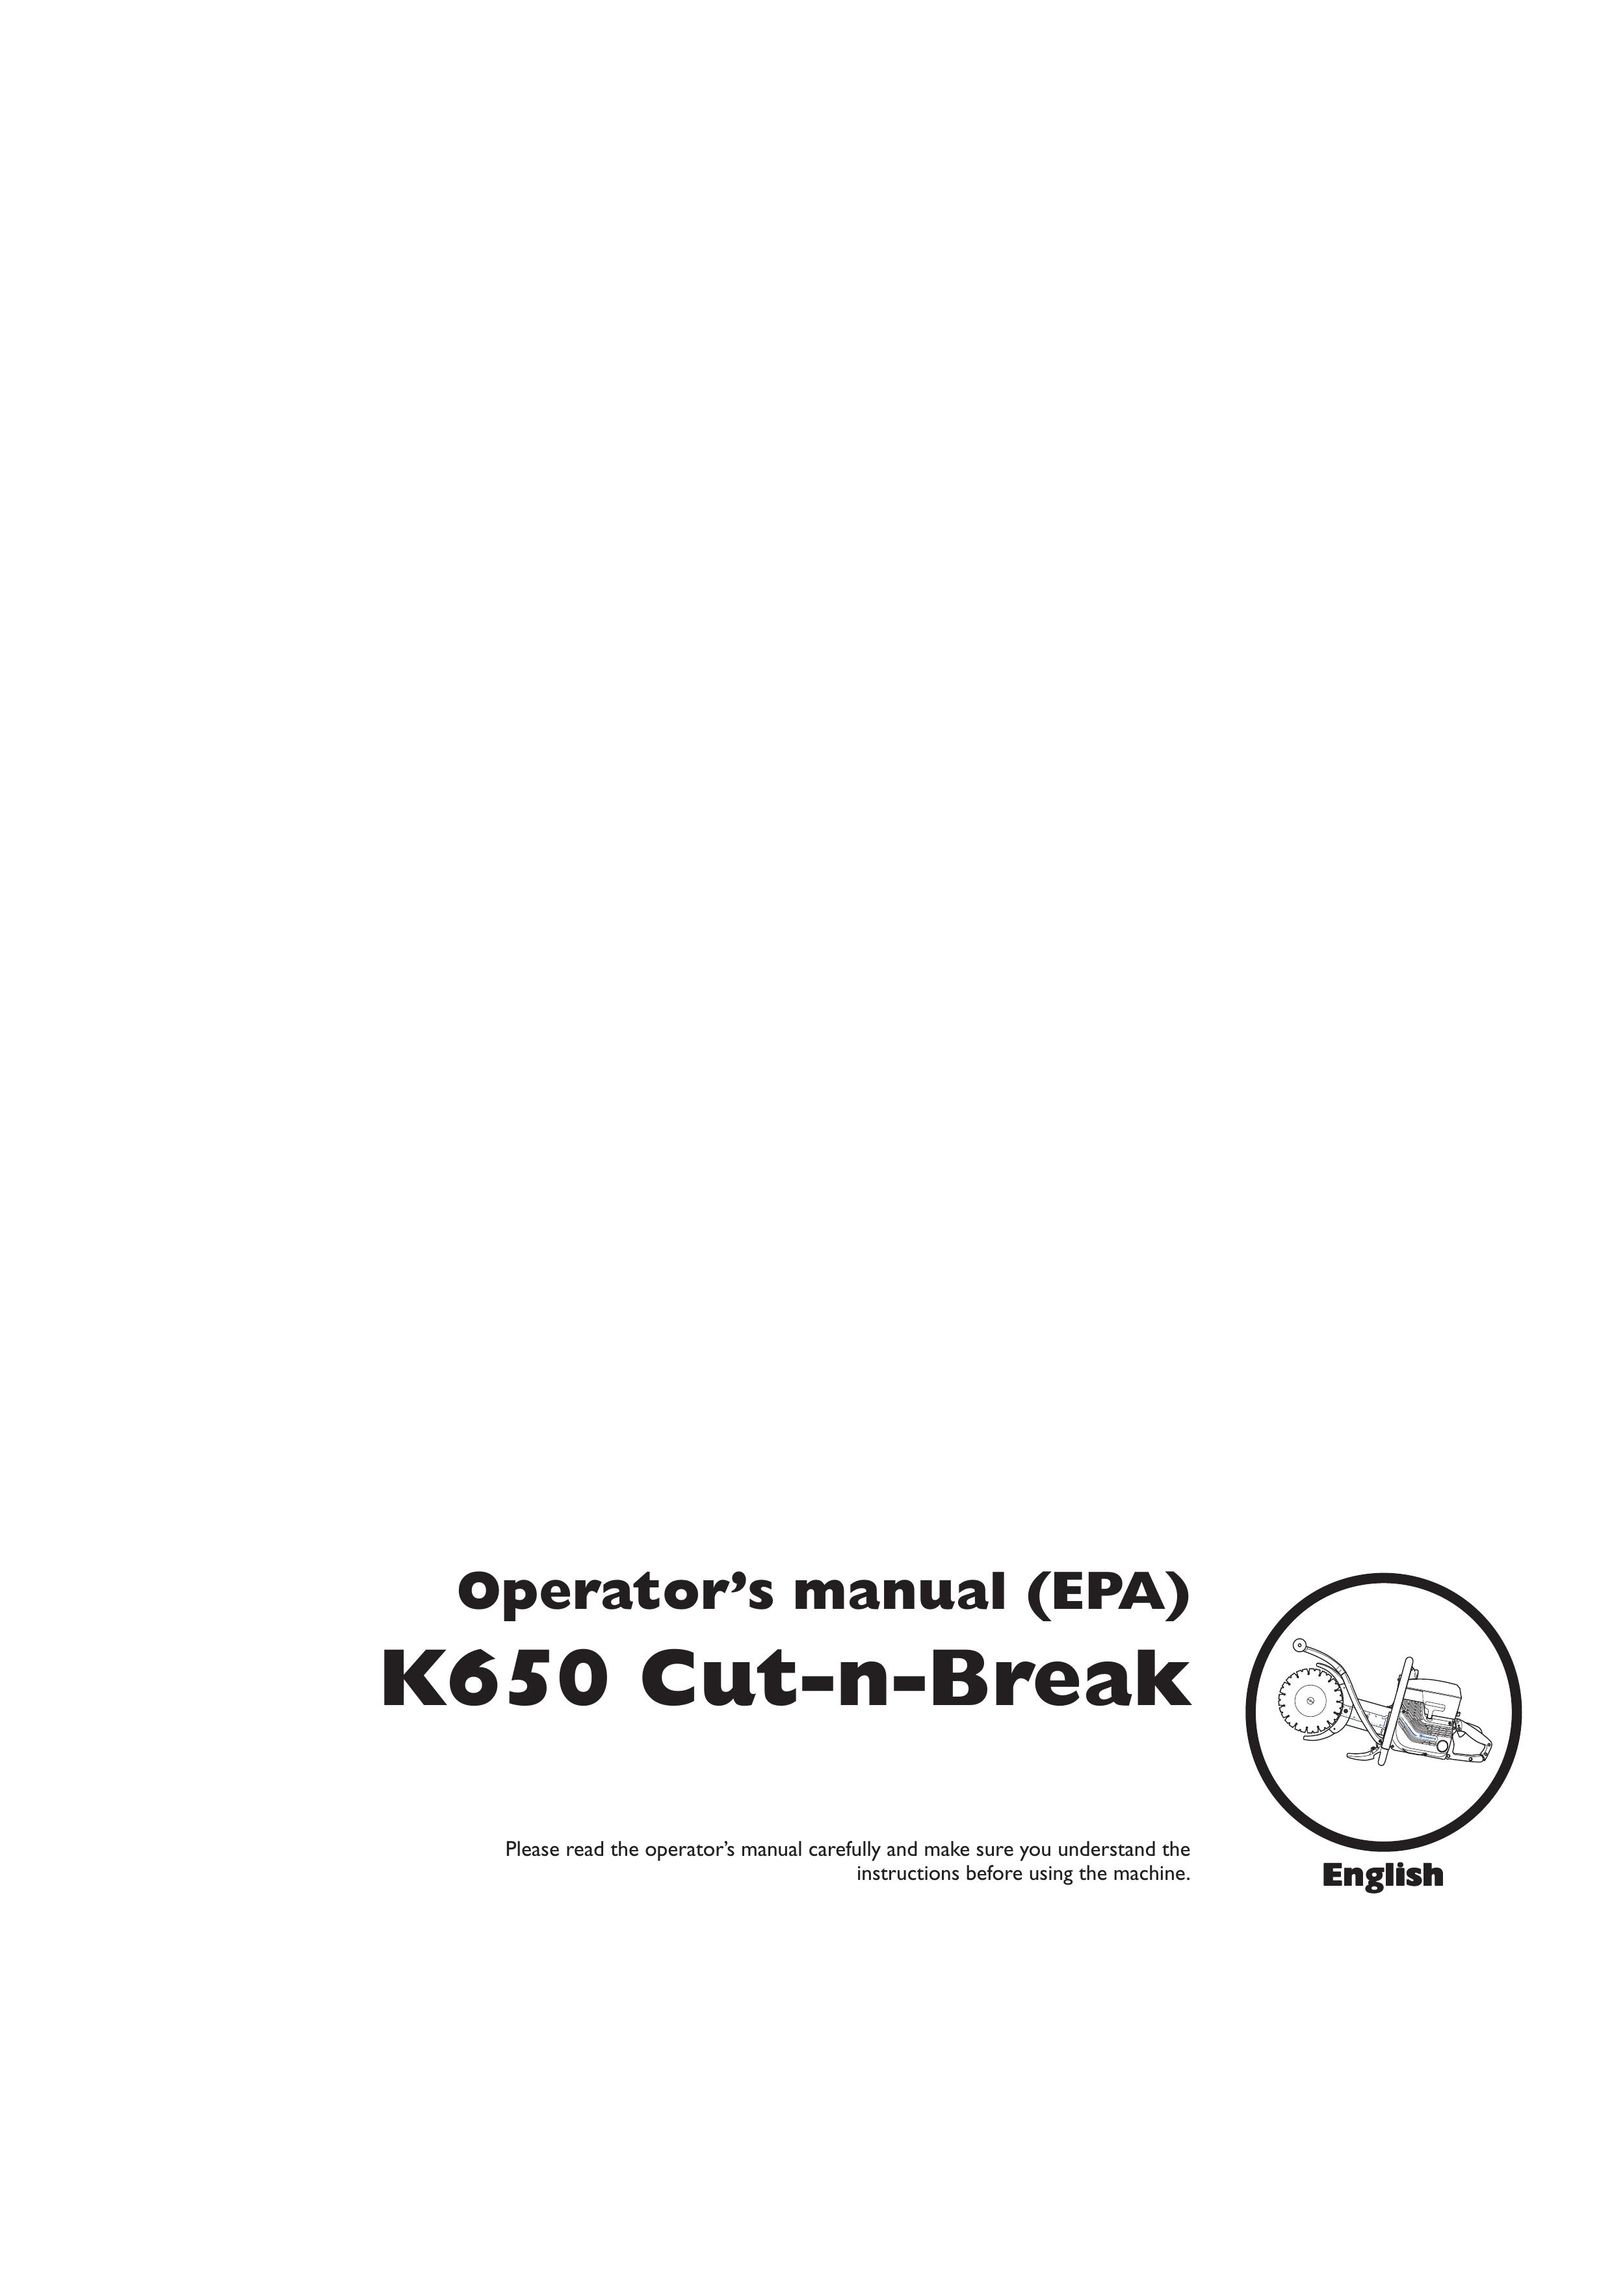 Husqvarna K650 Saw User Manual